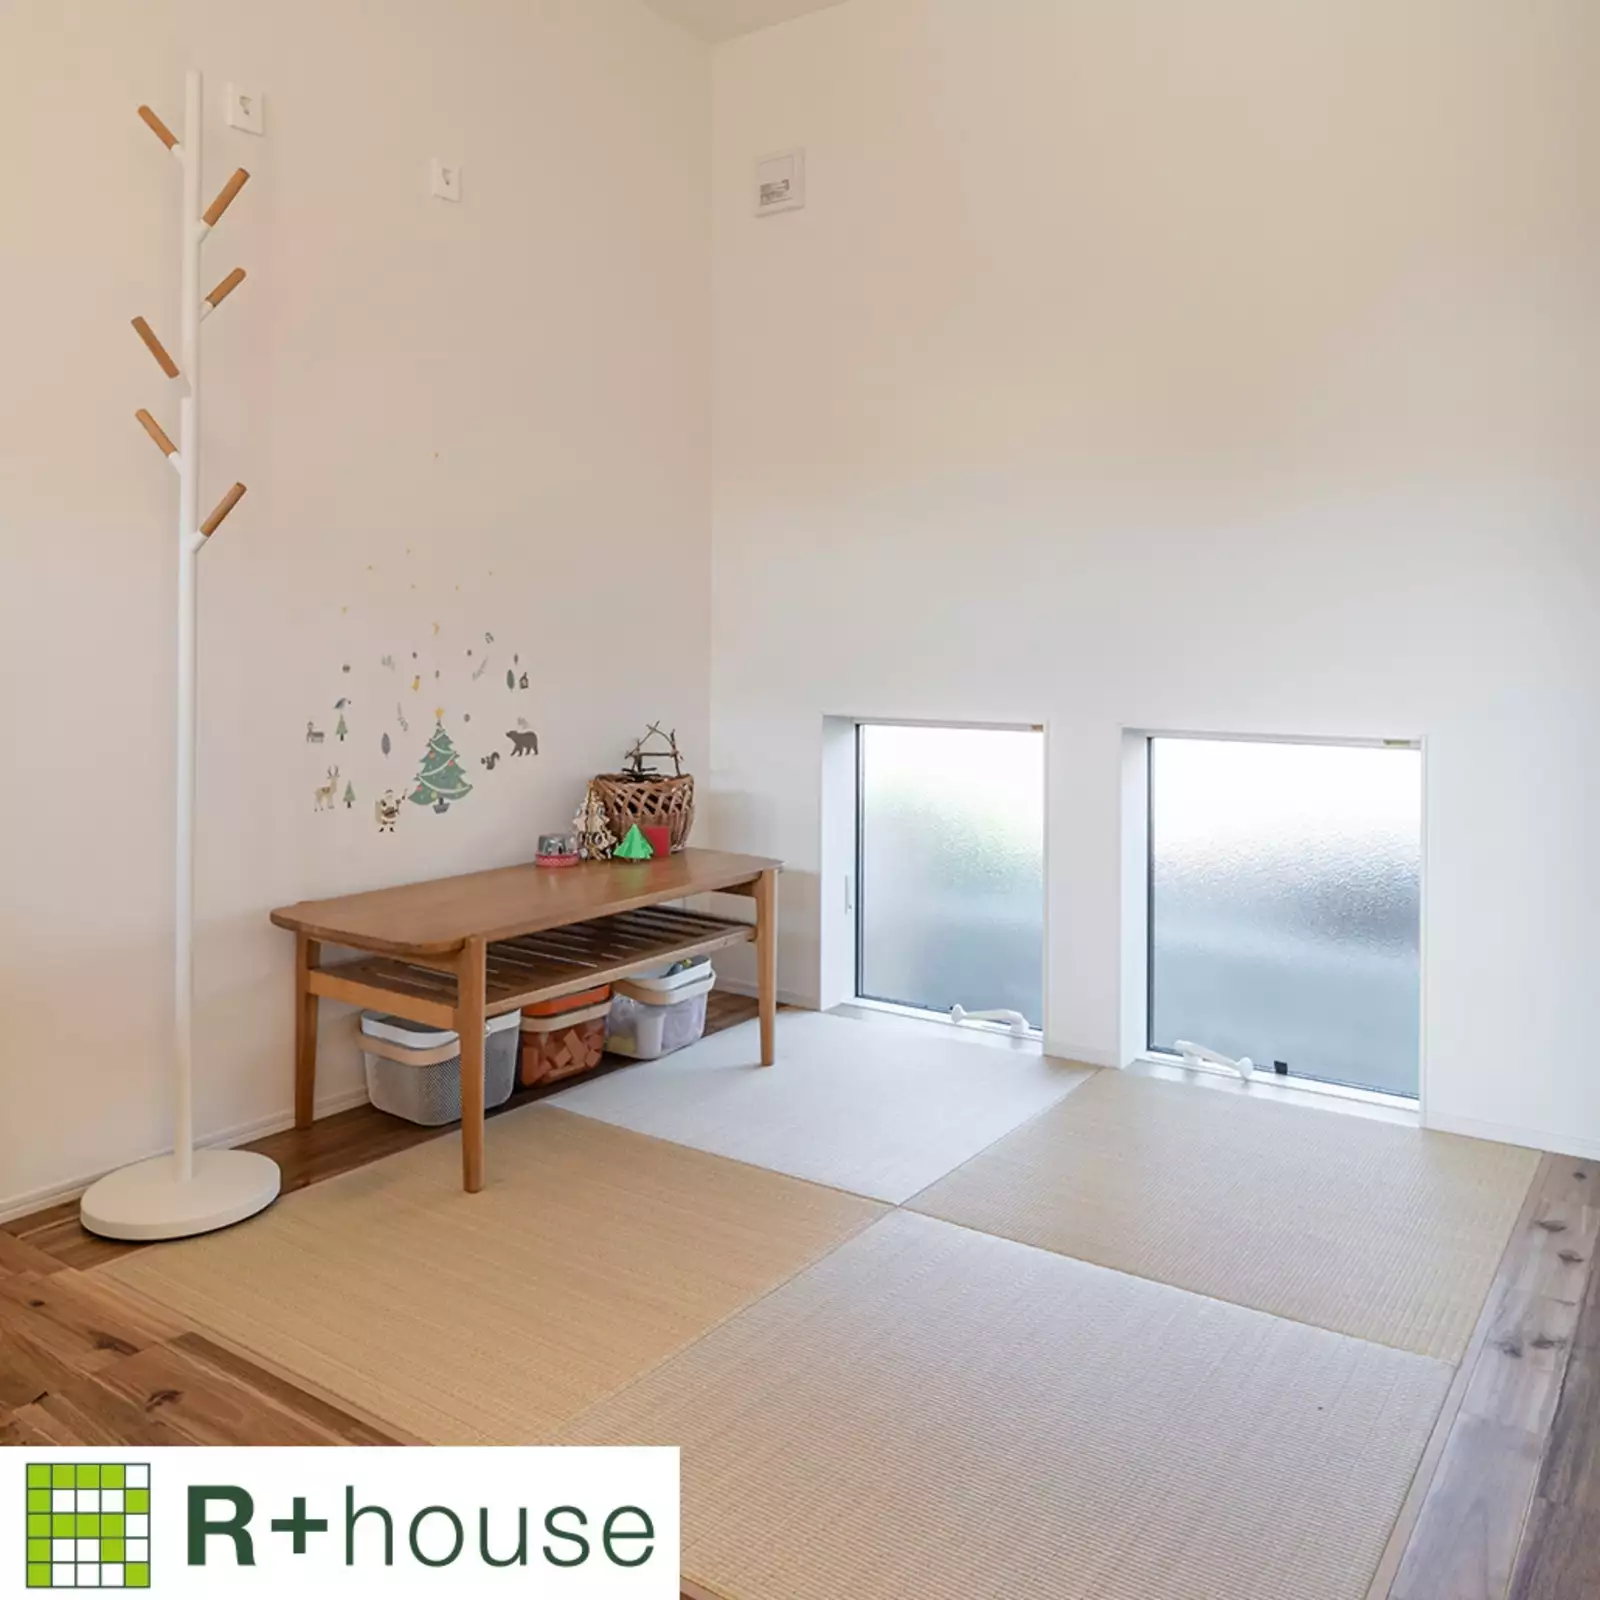 R+houseの物件の畳コーナーの写真です。大きめの四角い畳が四枚並んだスペース。すりガラスの窓もあり明るい。